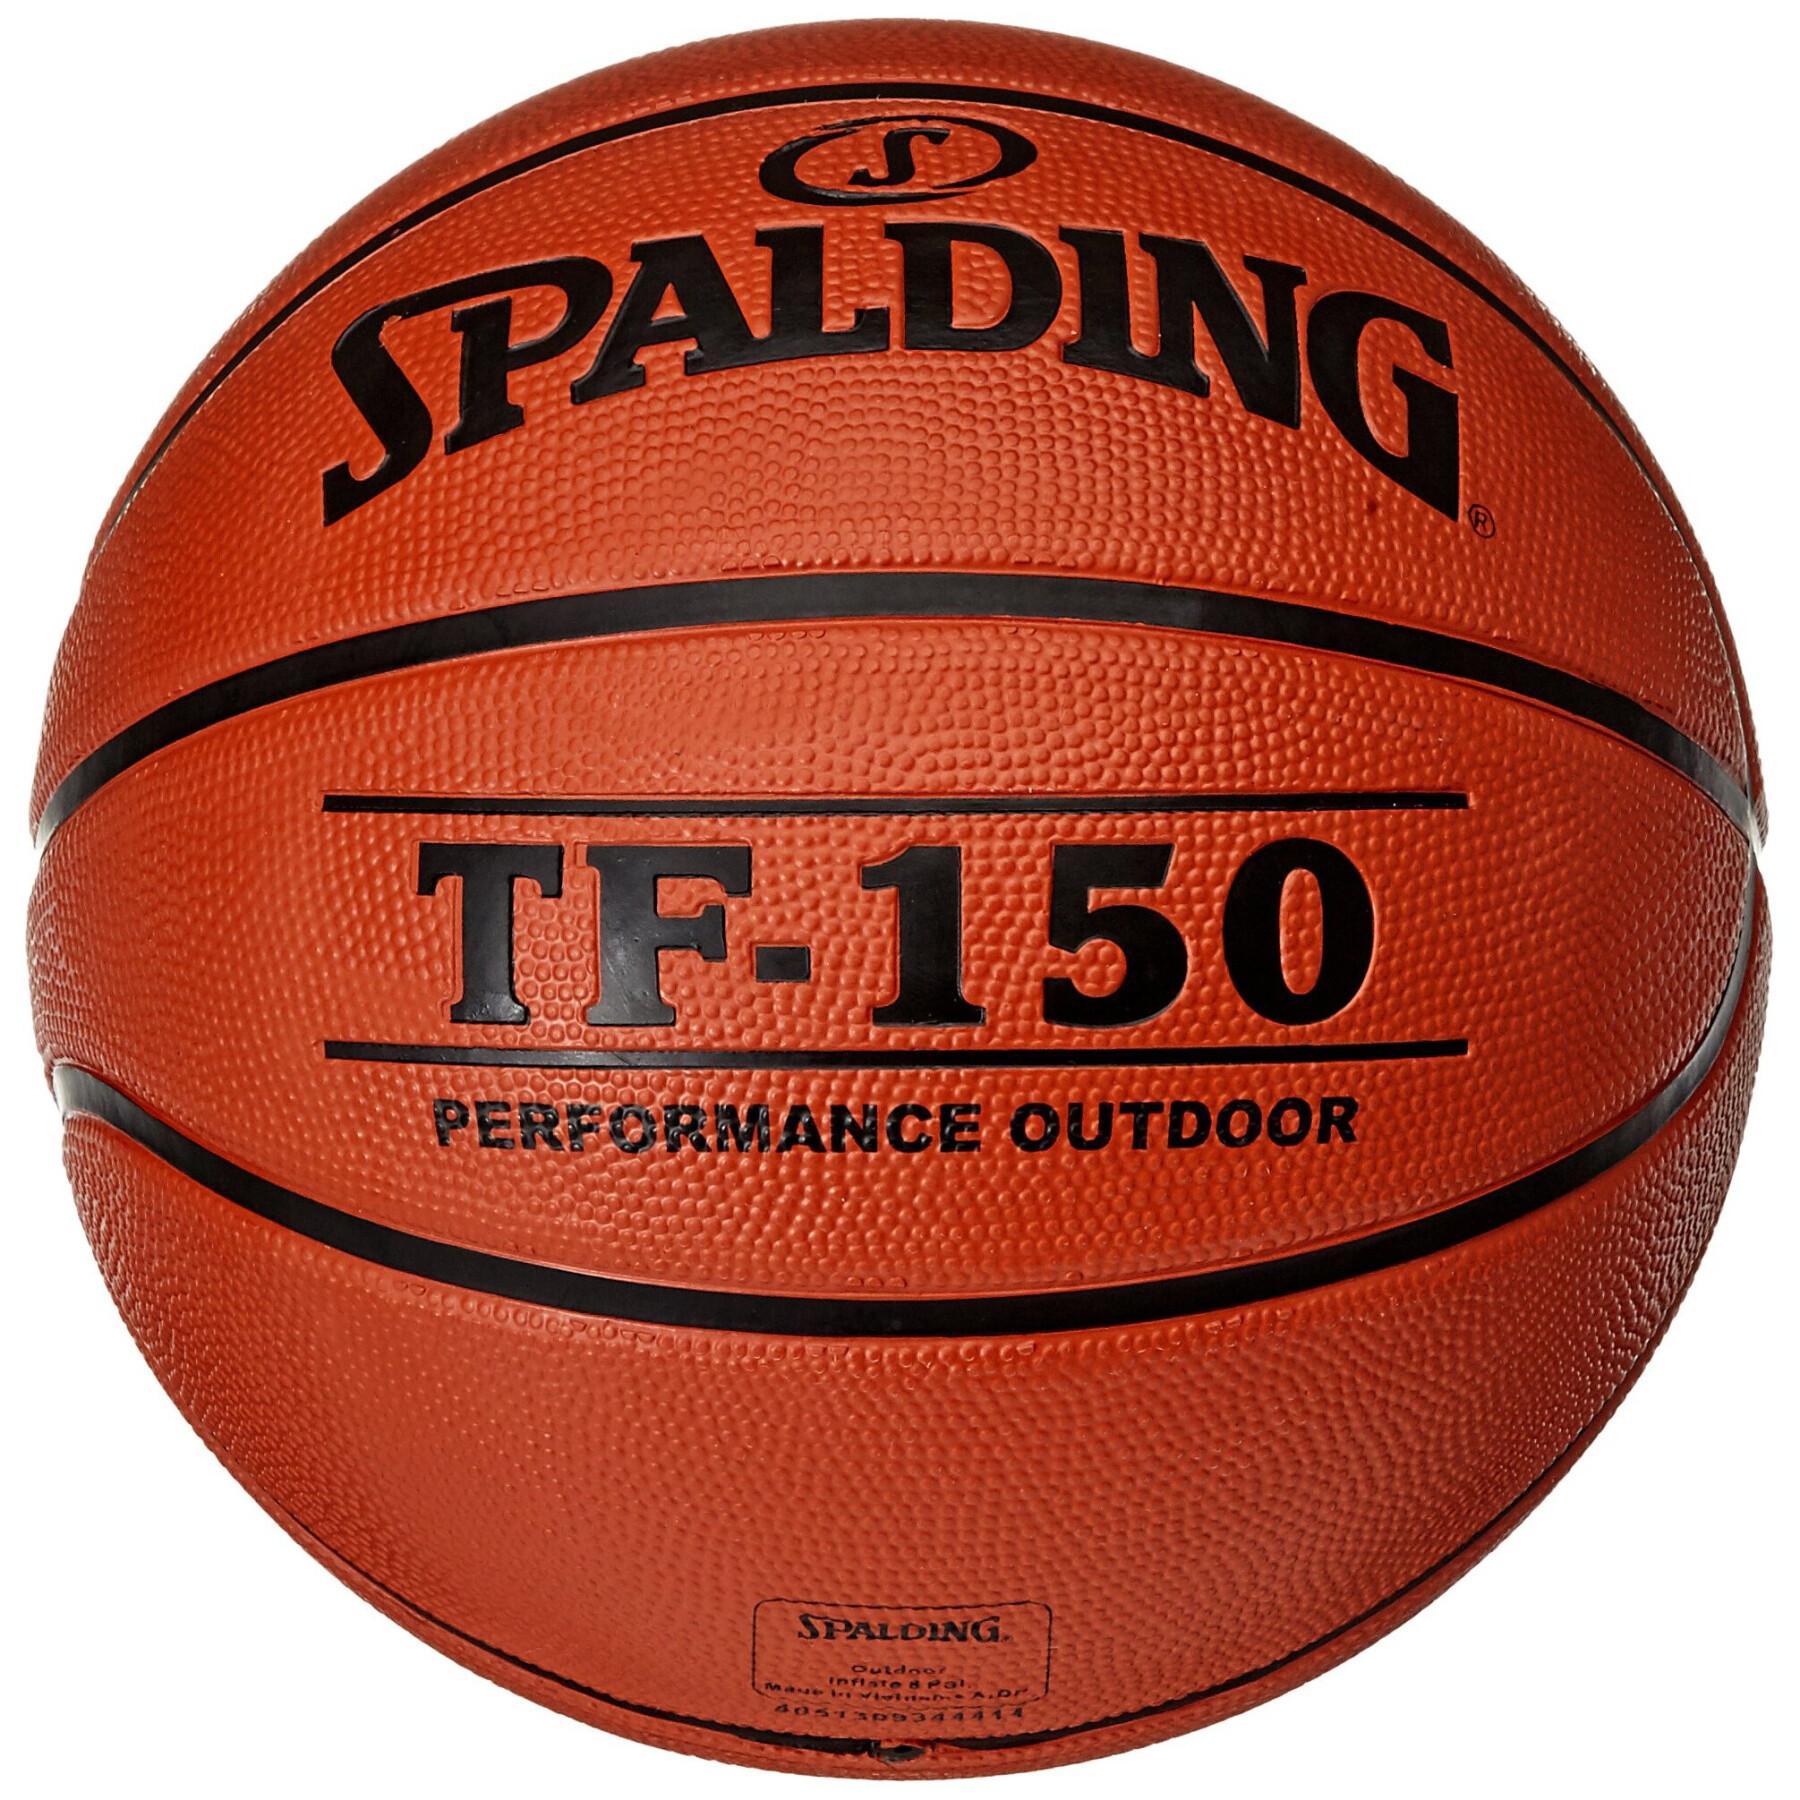 Ballong Spalding DBB Tf150 (83-103z)